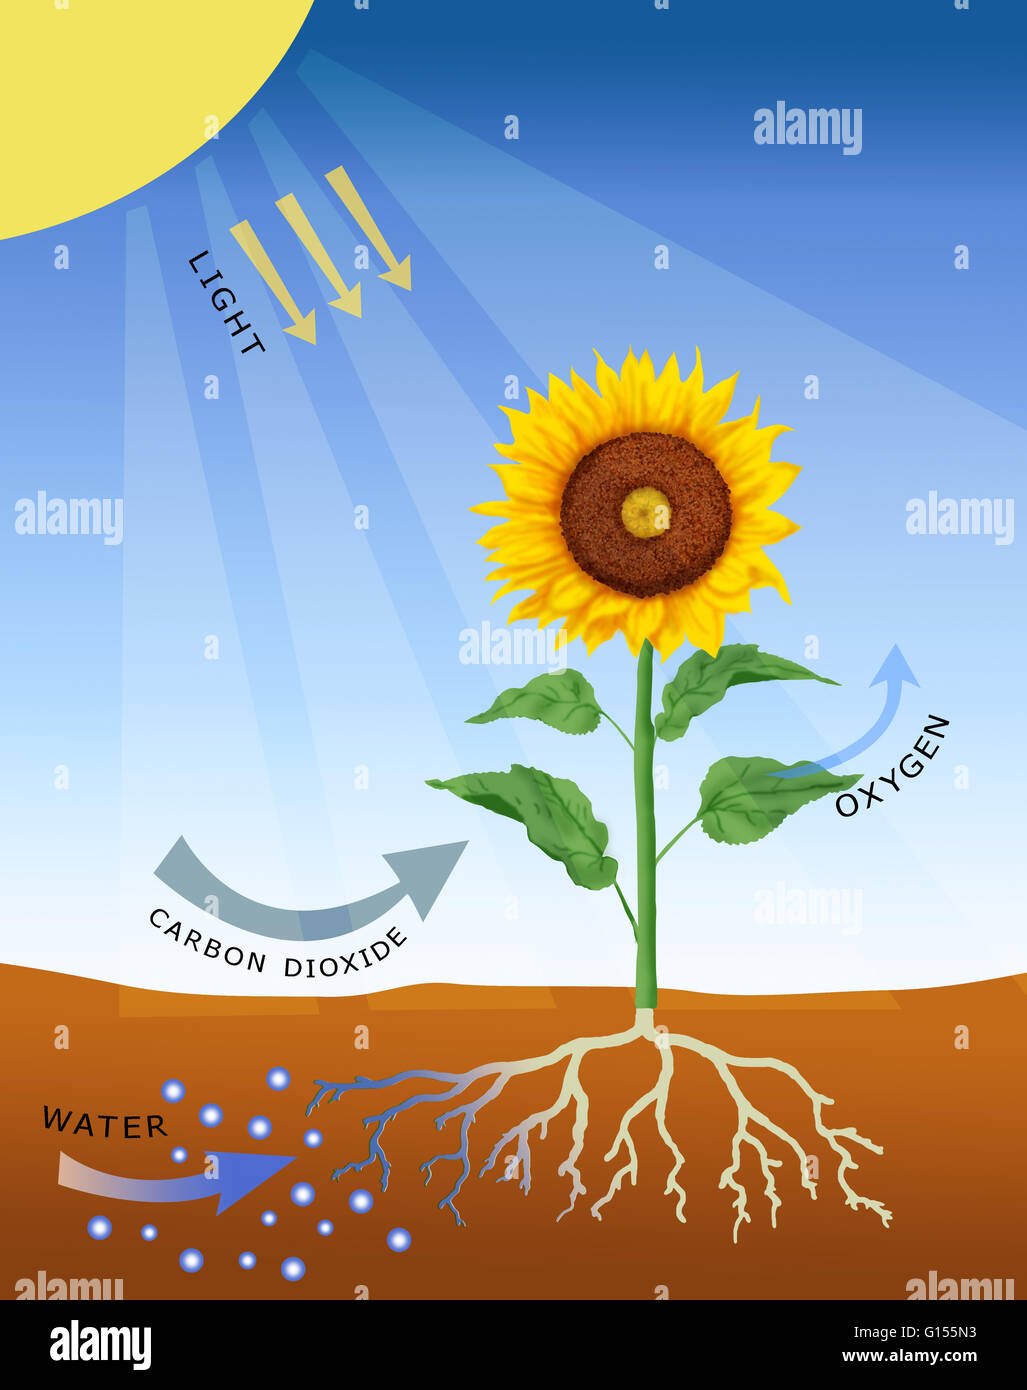 La fotosintesi, computer grafica. La fotosintesi è il processo mediante il quale la maggior parte delle piante (così come le alghe e alcuni batteri) convertono la luce solare in energia chimica. Questa energia viene utilizzata per produrre carboidrati, quali amido, che viene immagazzinato e utilizzato per crescere Foto Stock